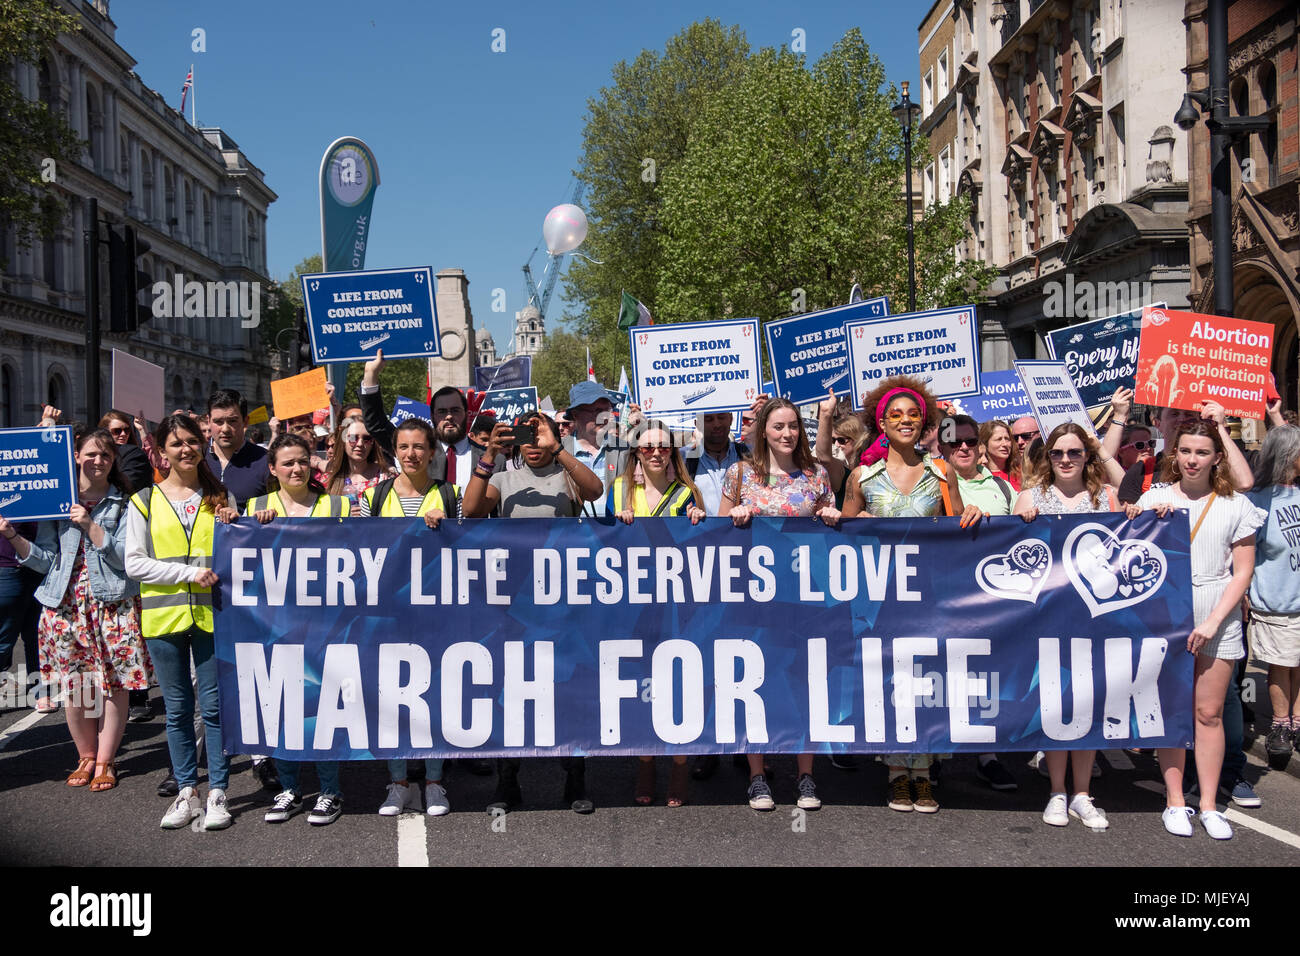 Londres, Royaume-Uni, 5 mai 2018, les membres de la Marche pour la vie UK a organisé une marche à travers le centre de Londres. L'avant de la pause de mars à Whitehall Crédit : Adrian mabe/Alamy Live News Banque D'Images